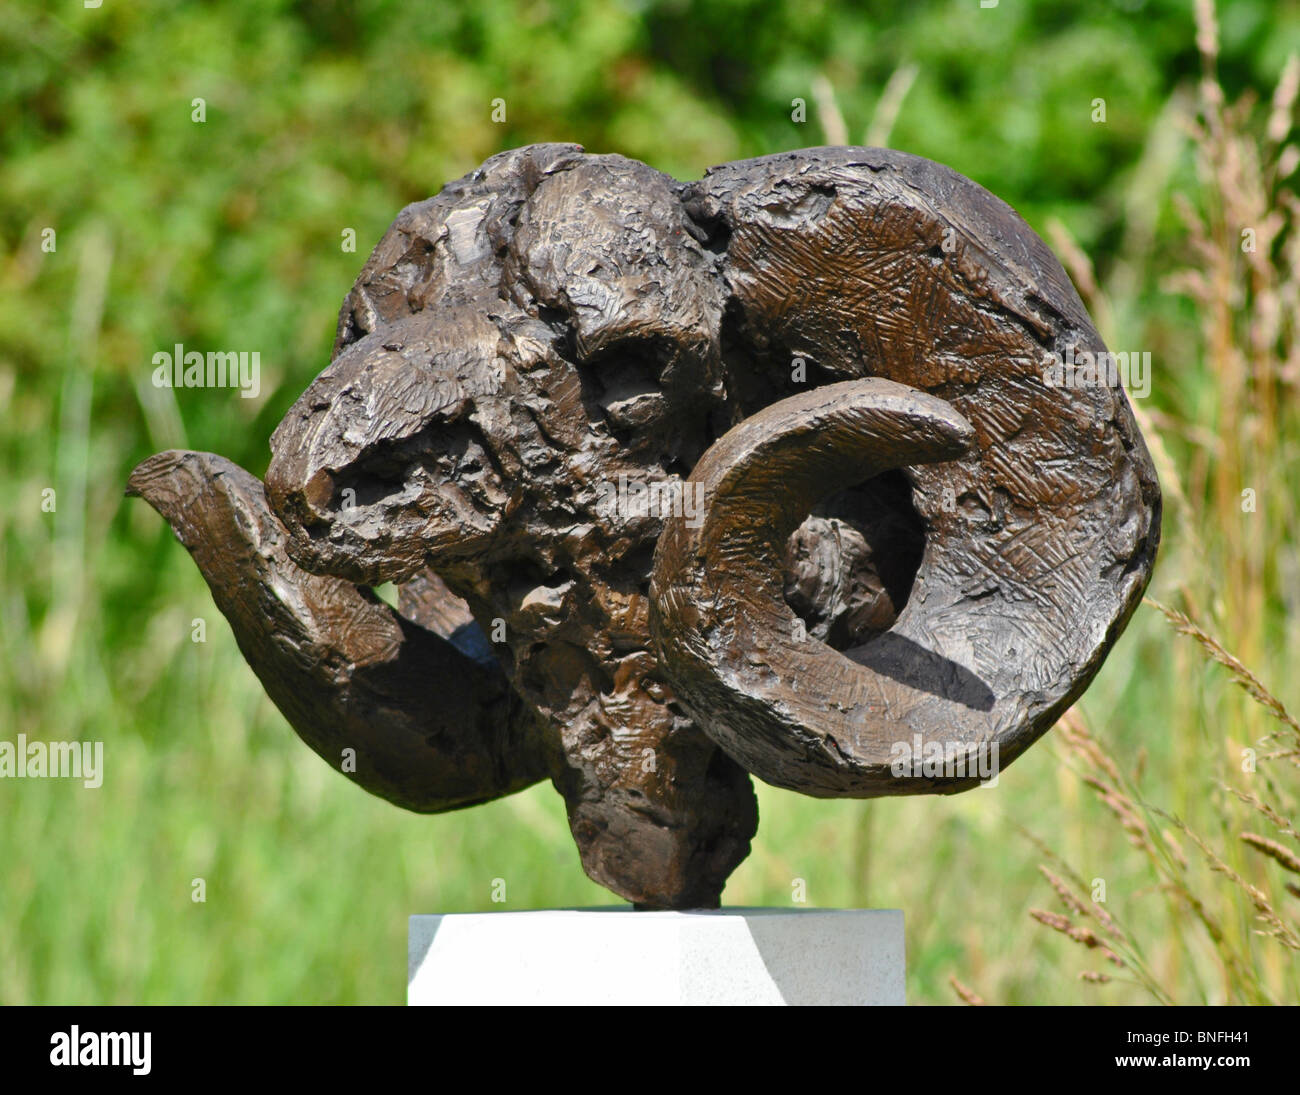 Sculpture of a Ram's Head in a garden, Dorset, England Stock Photo